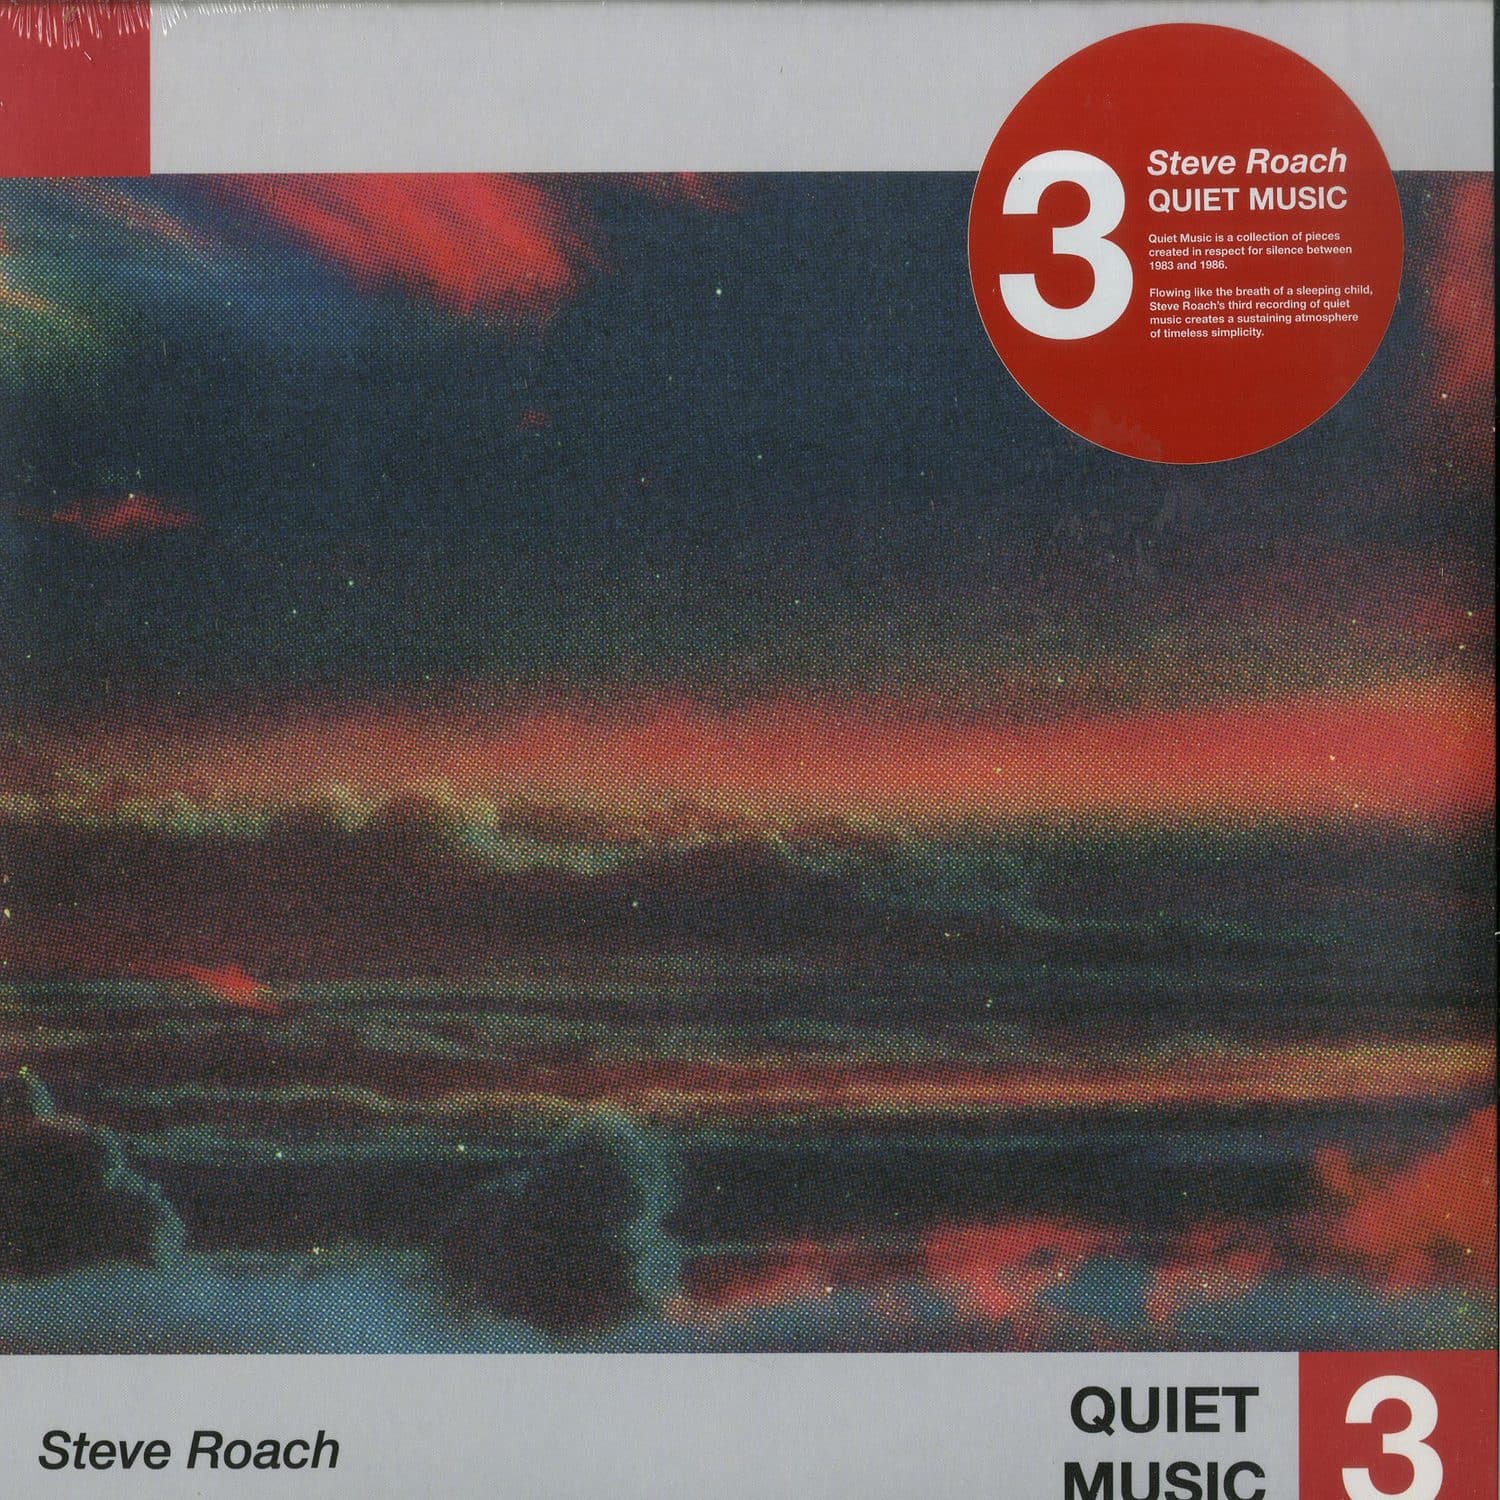 Steve Roach - QUIET MUSIC 3 